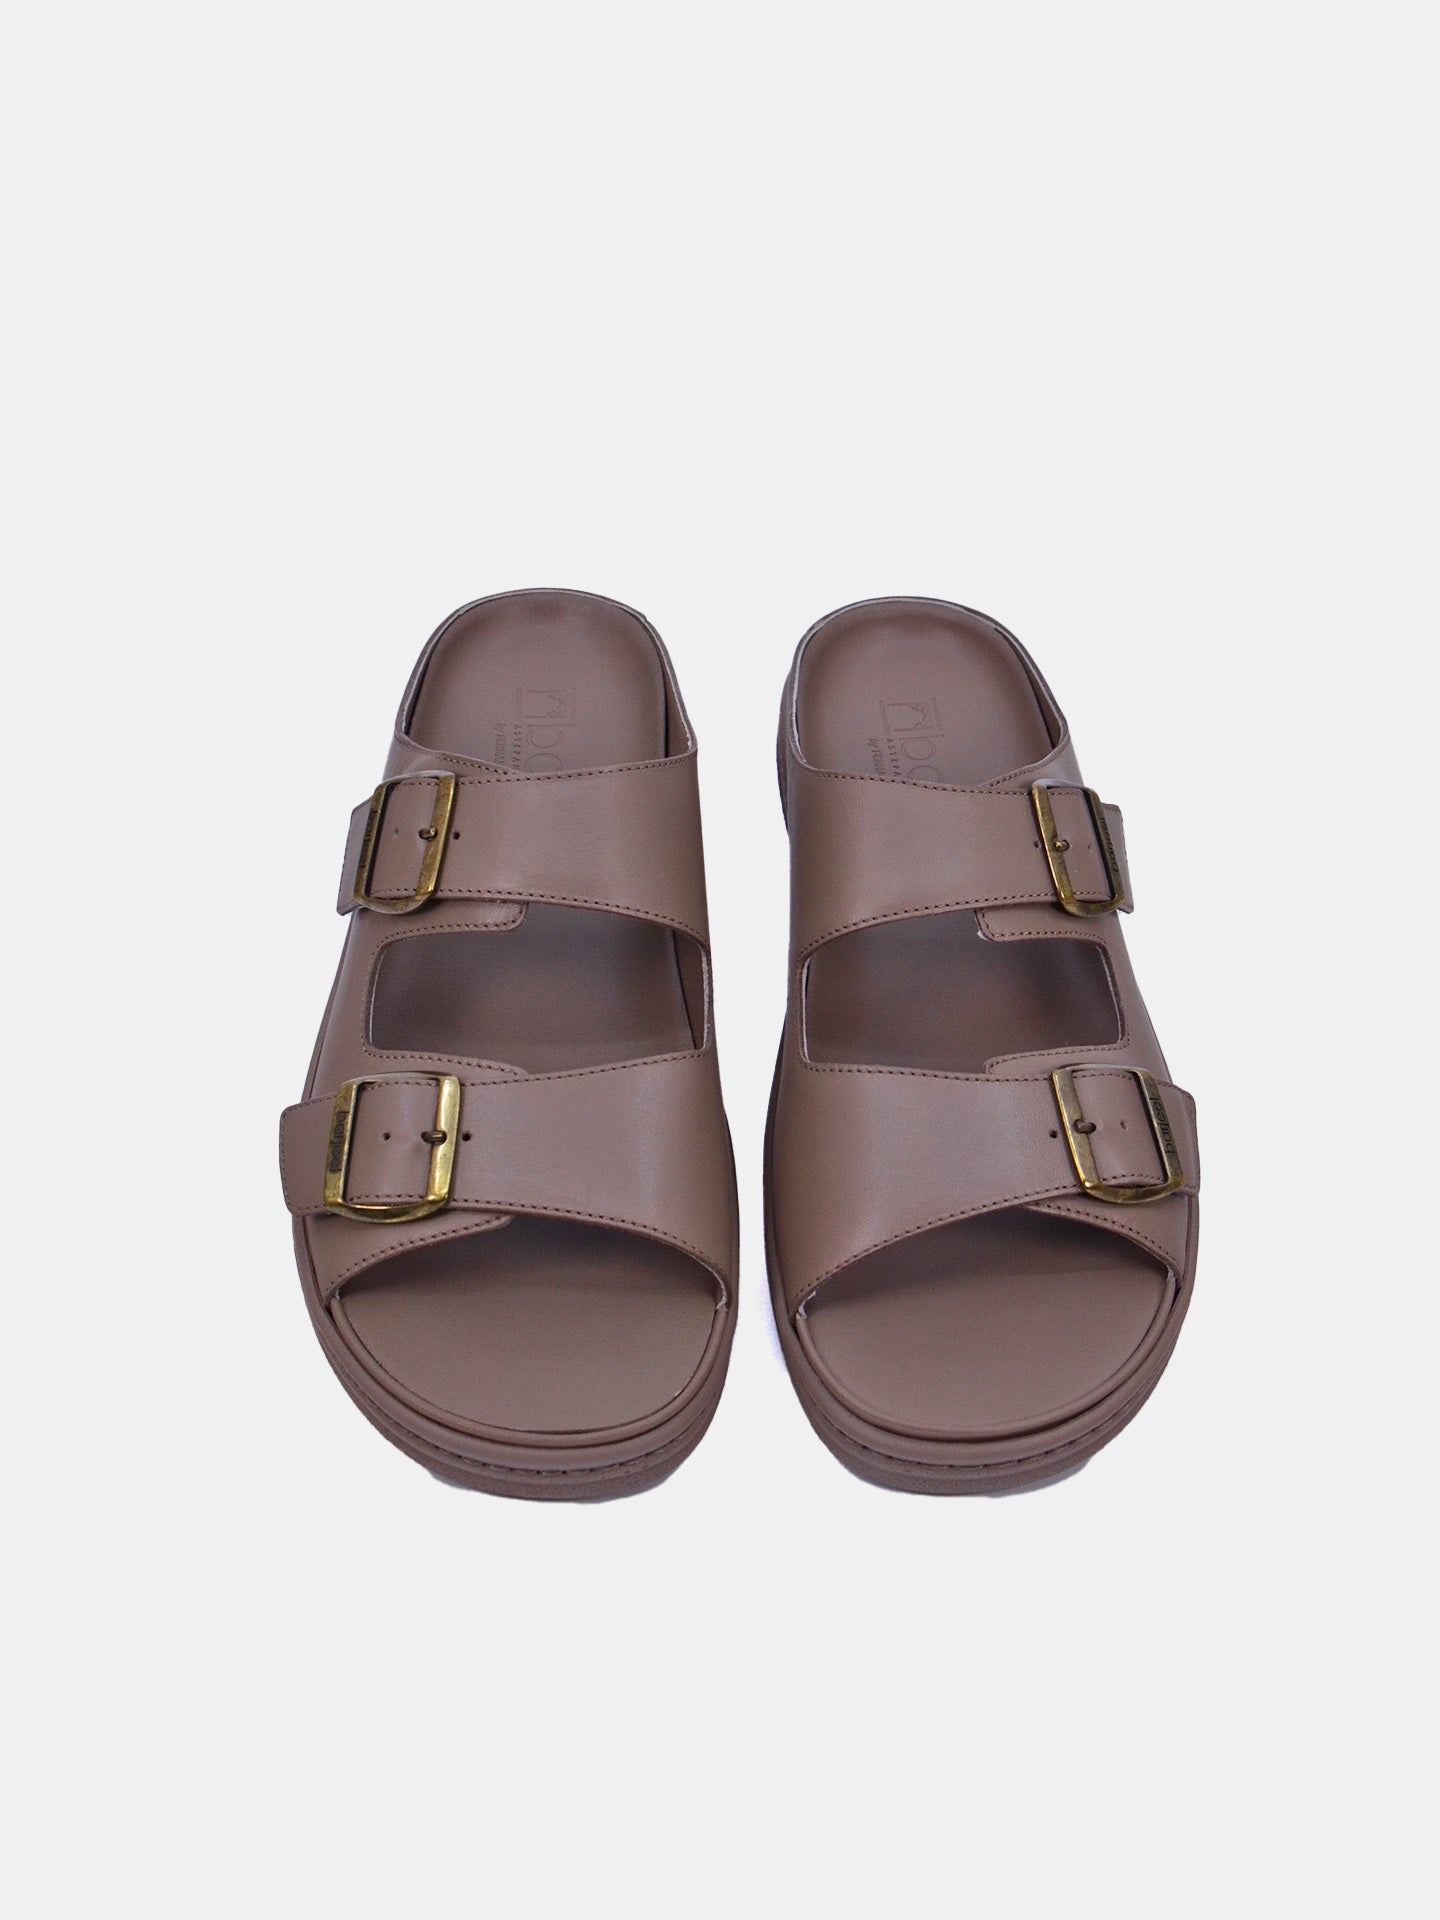 Barjeel Uno 23810 Men's Arabic Sandals #color_Beige